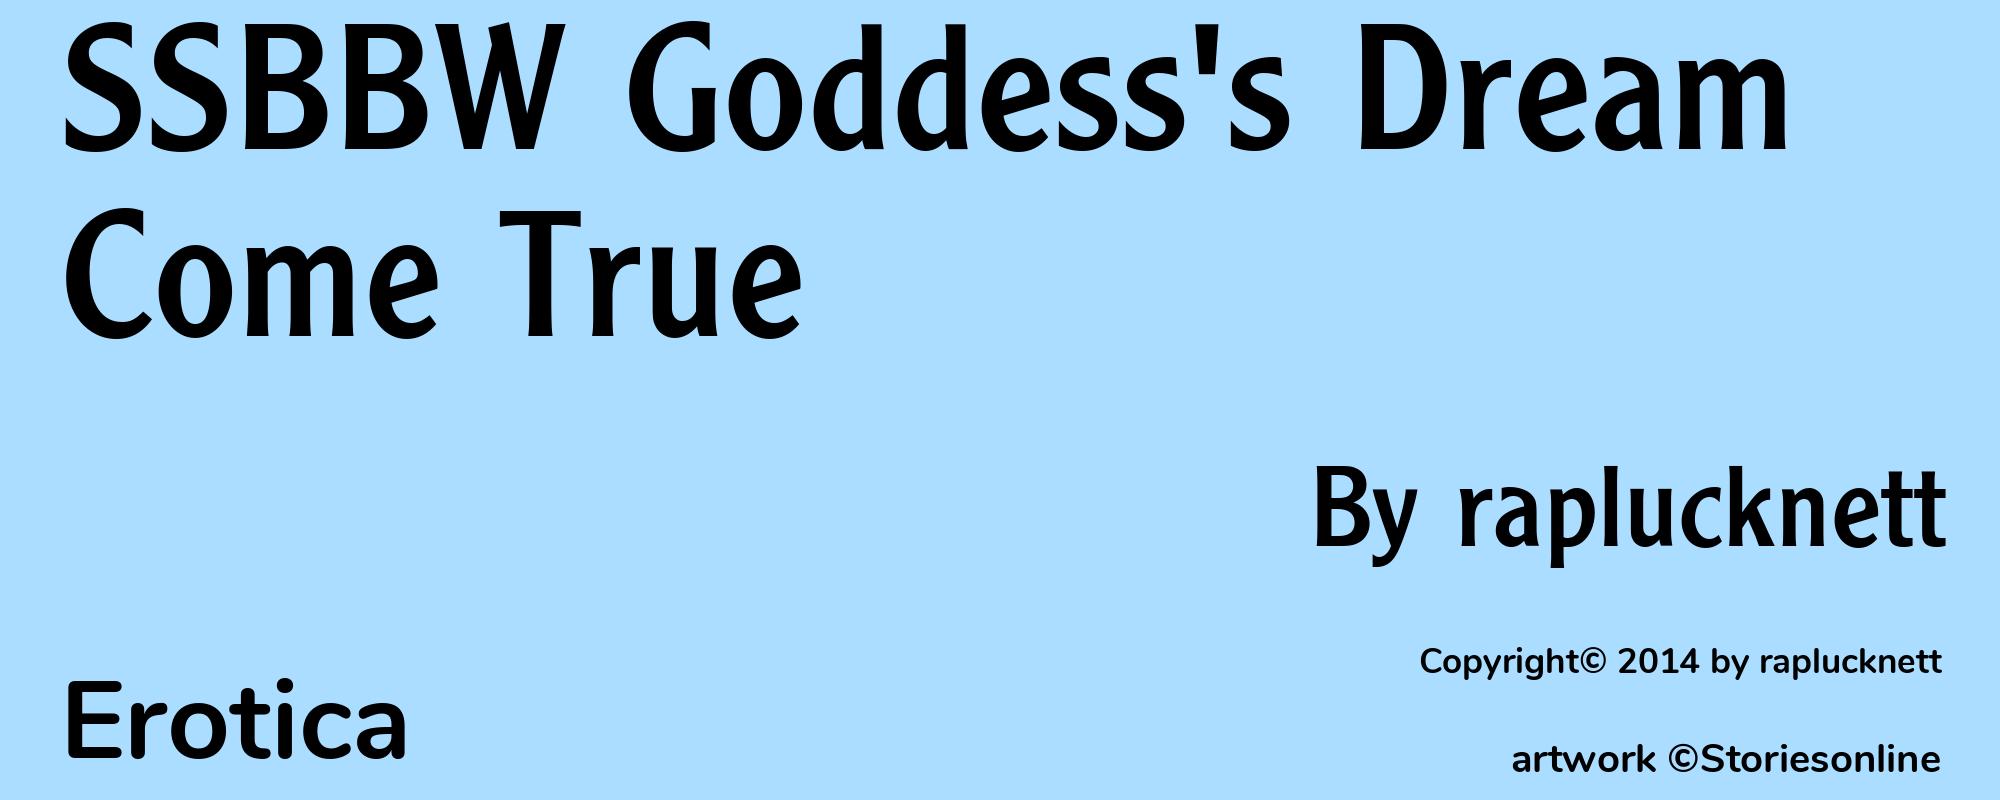 SSBBW Goddess's Dream Come True - Cover